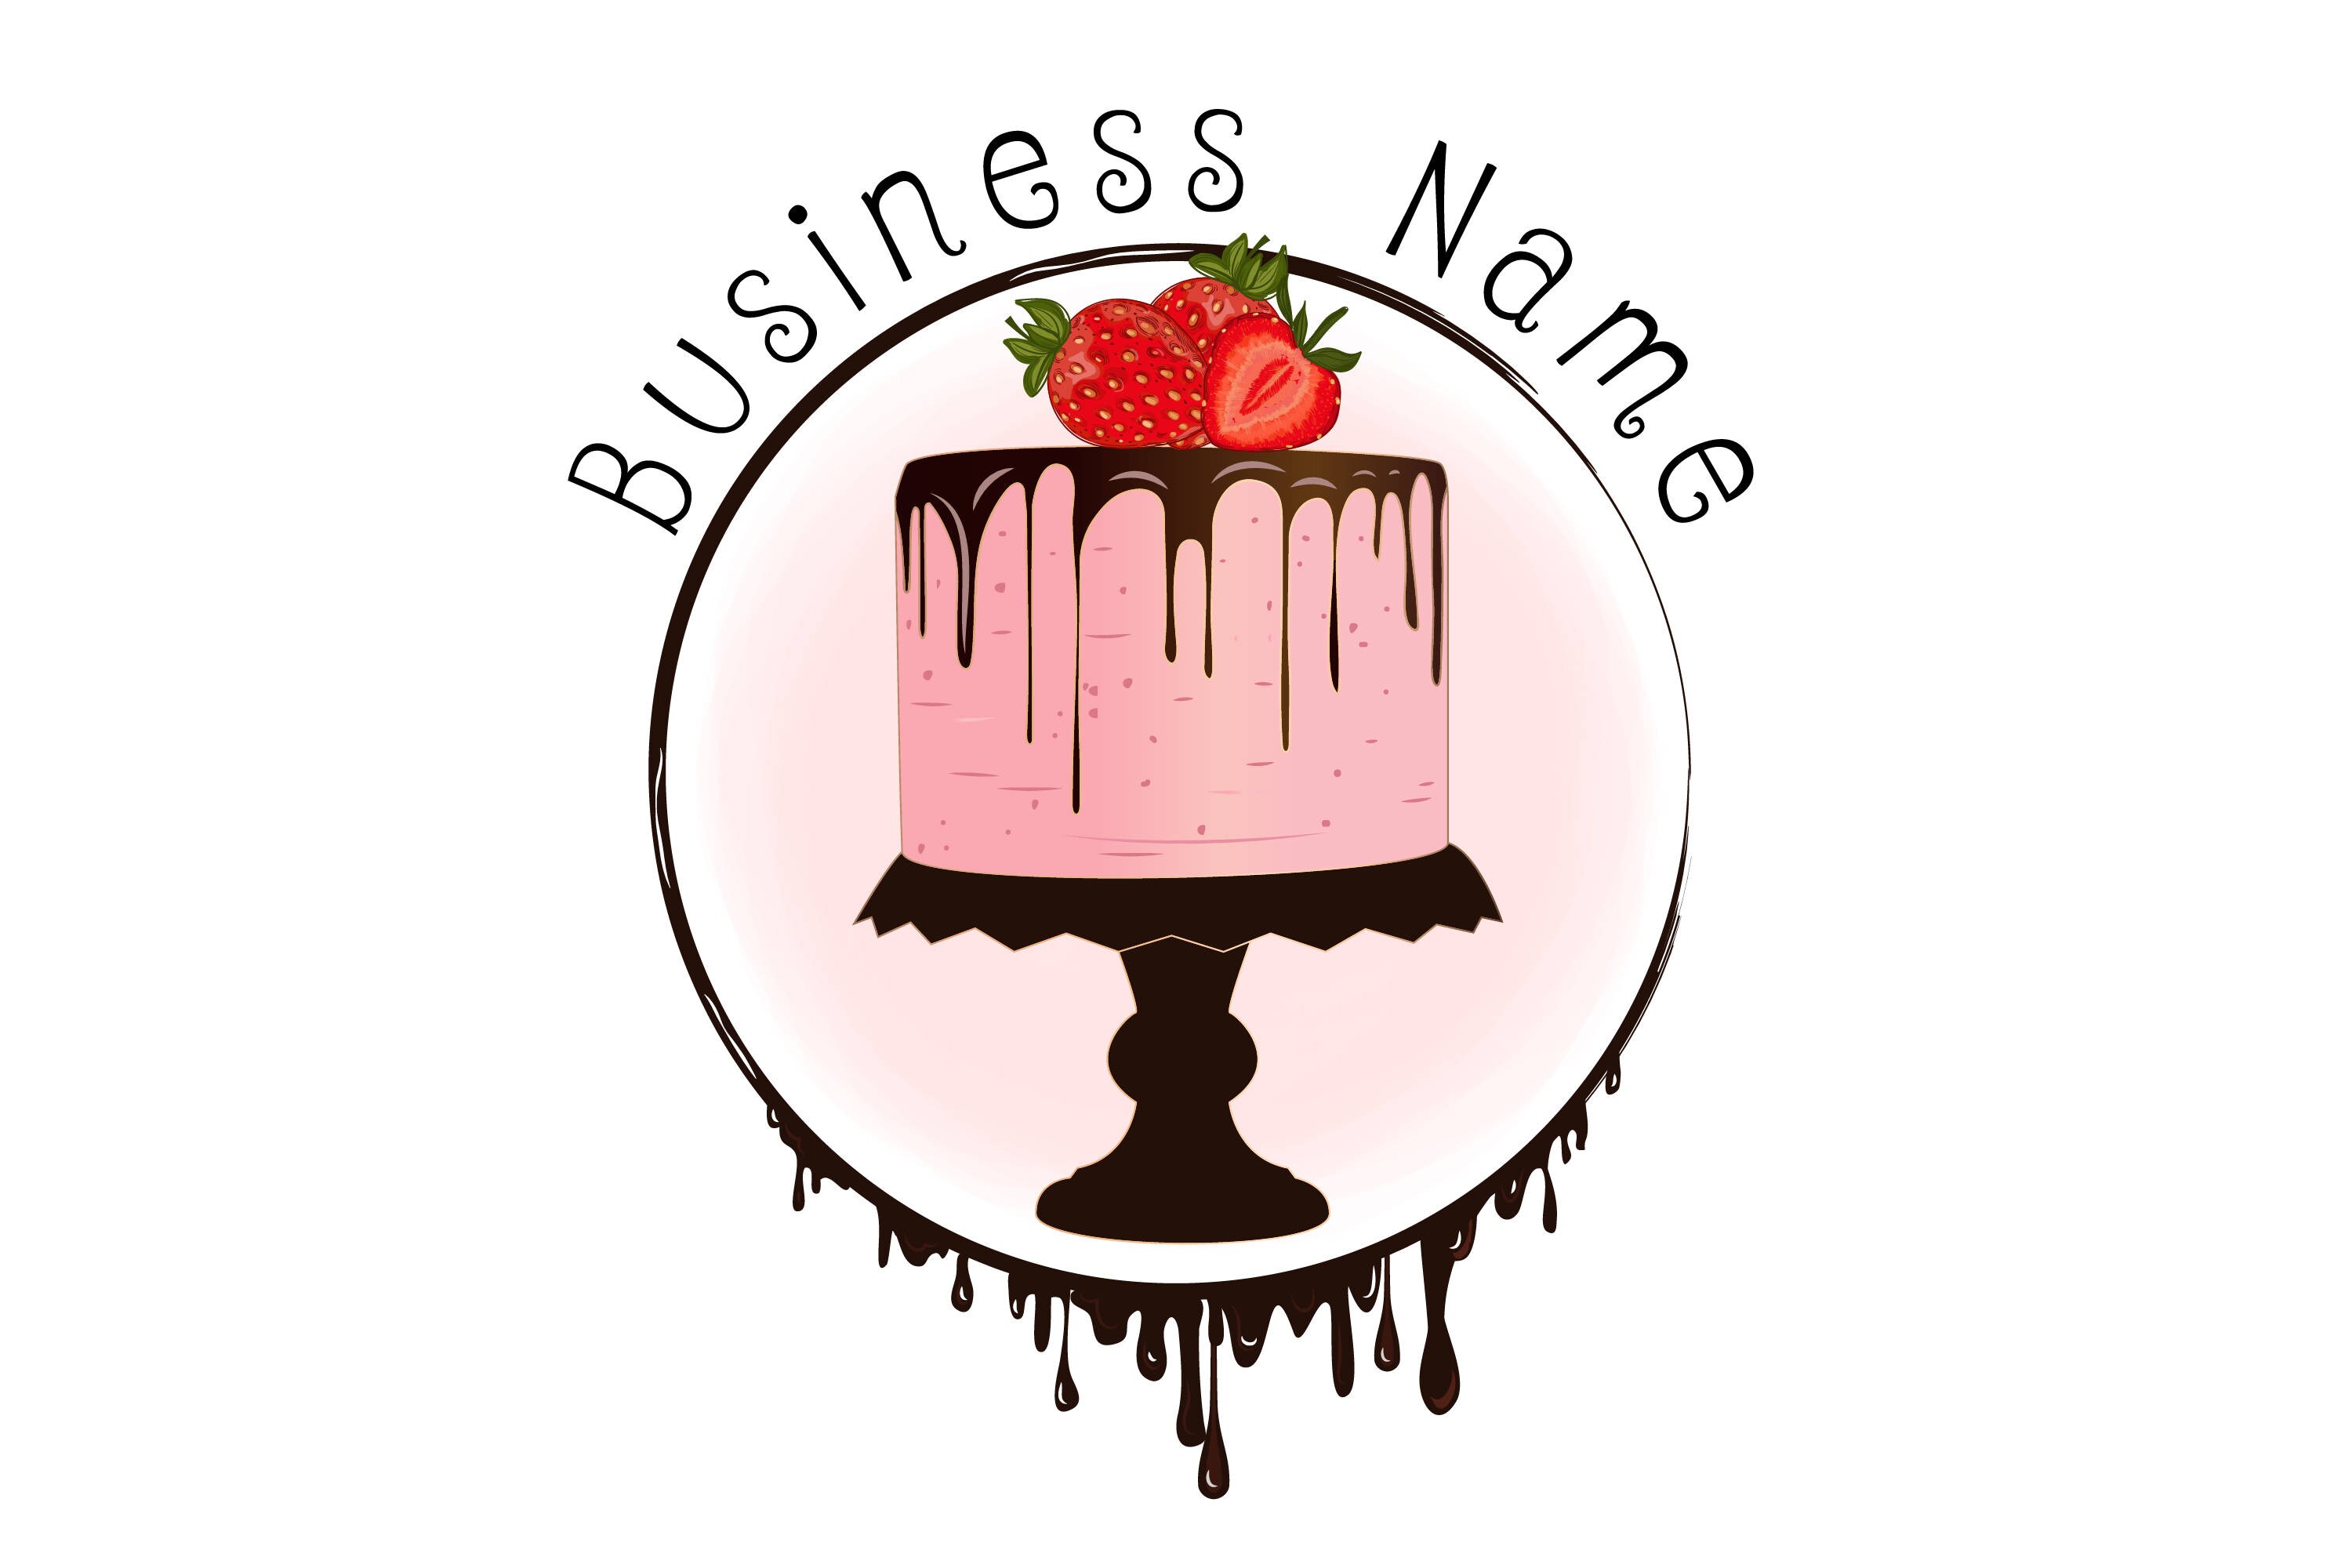 cake business logo maker